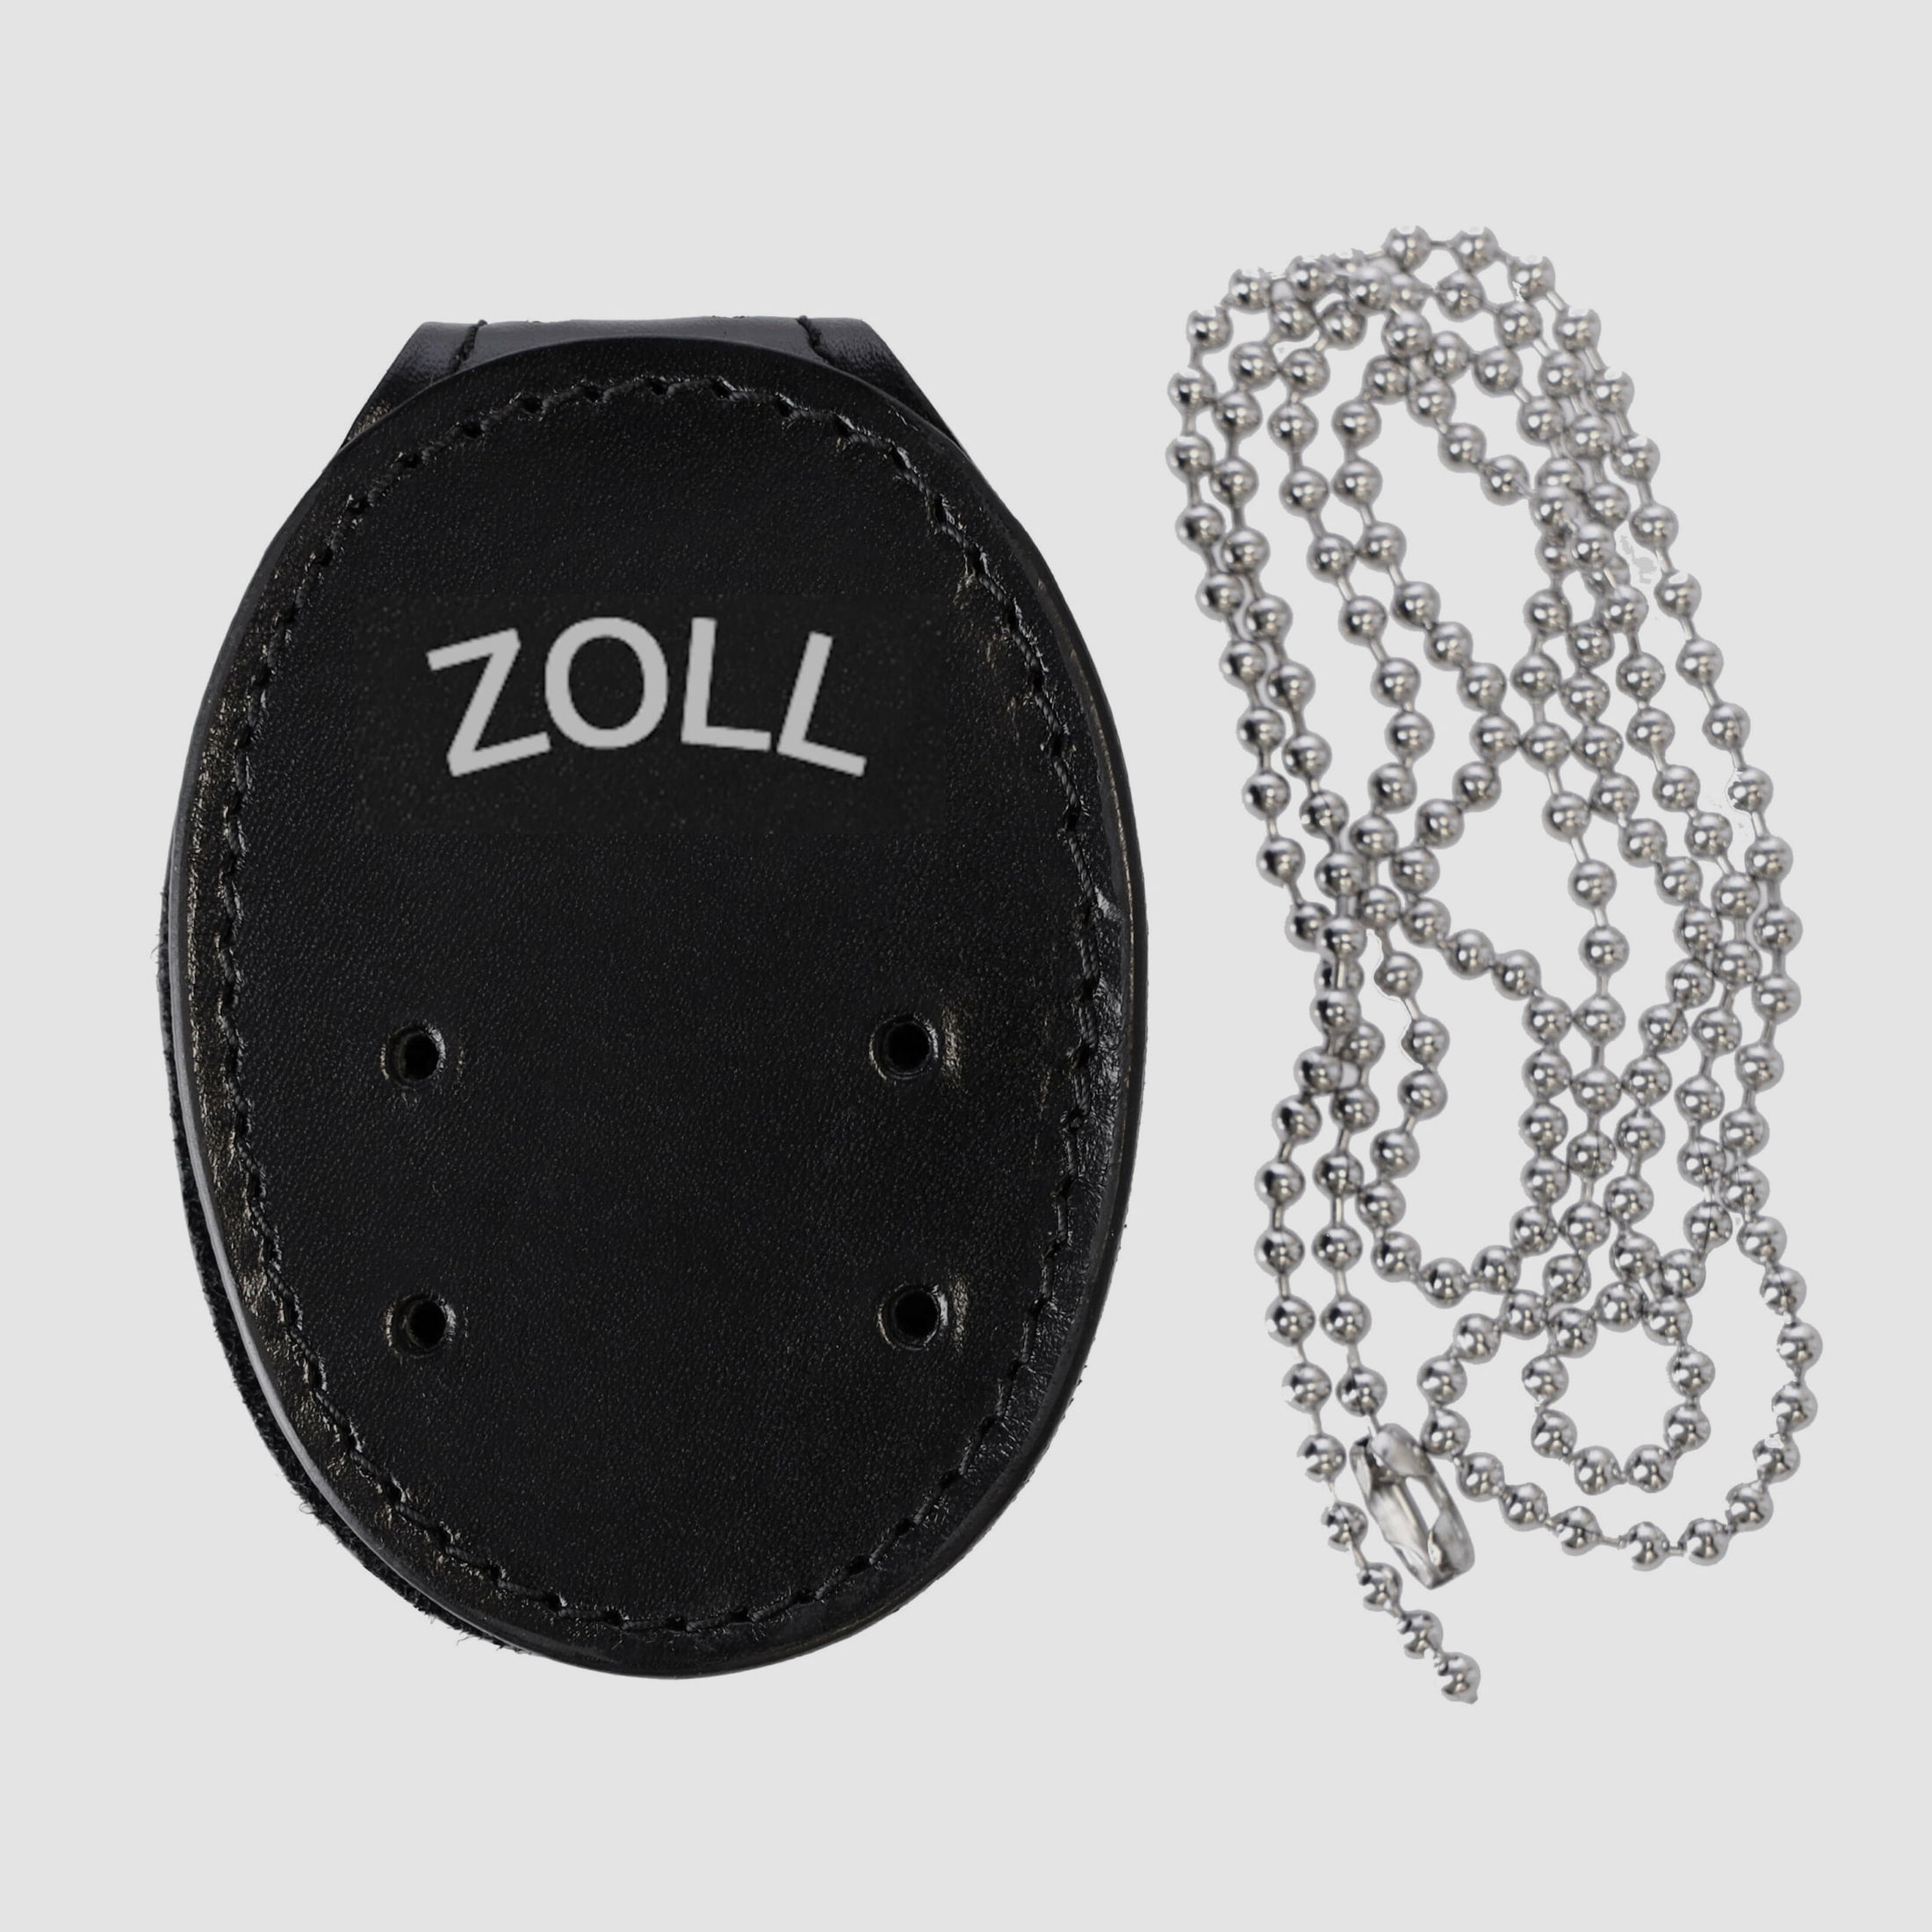 ETZEL Markenhalter mit Gürtelclip und Kette "ZOLL"